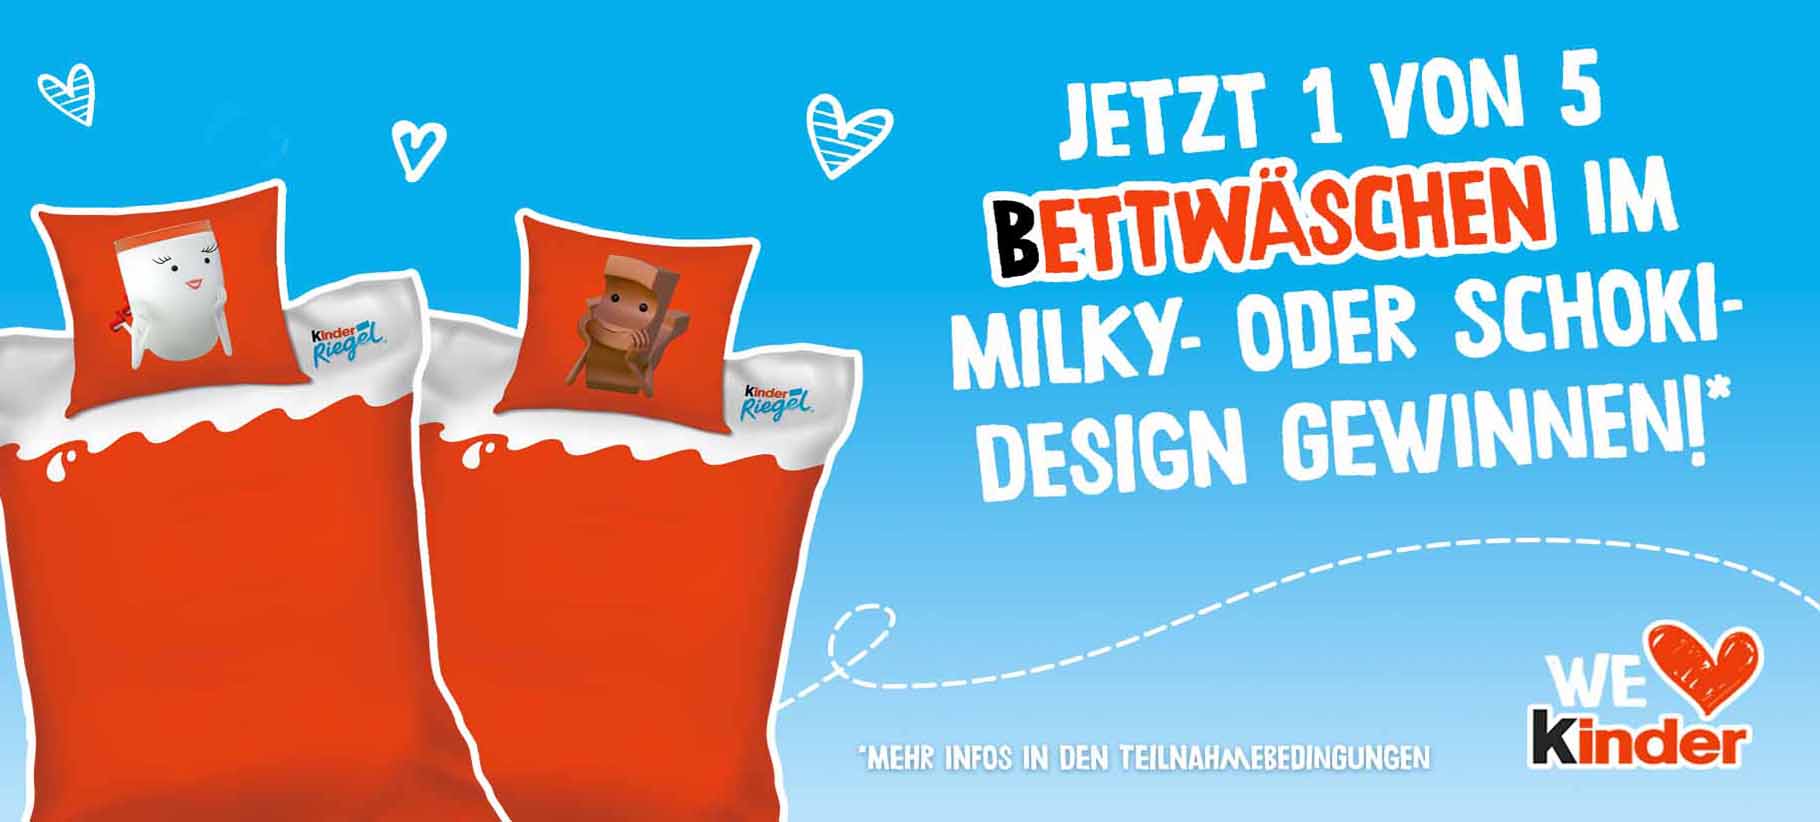 Jetzt eine von fünf Bettwäschen im Milky-oder Schoki-Design Gewinnnen! Nur hier bei Lebensmittel-Sonderposten.de